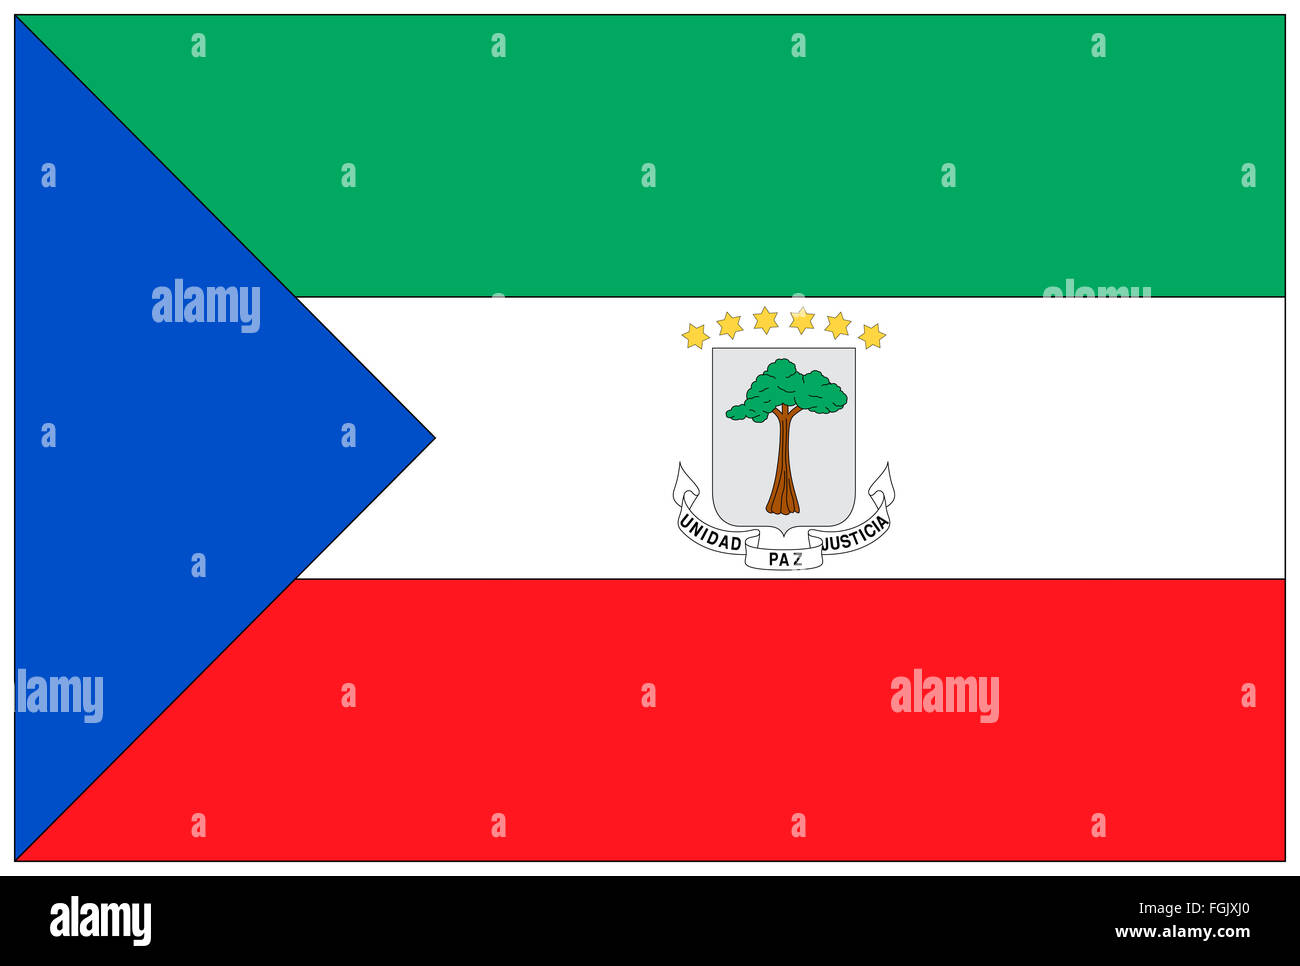 Fahne: Aequatorial Guinea/ flag: Equatorial Guinea. Stock Photo